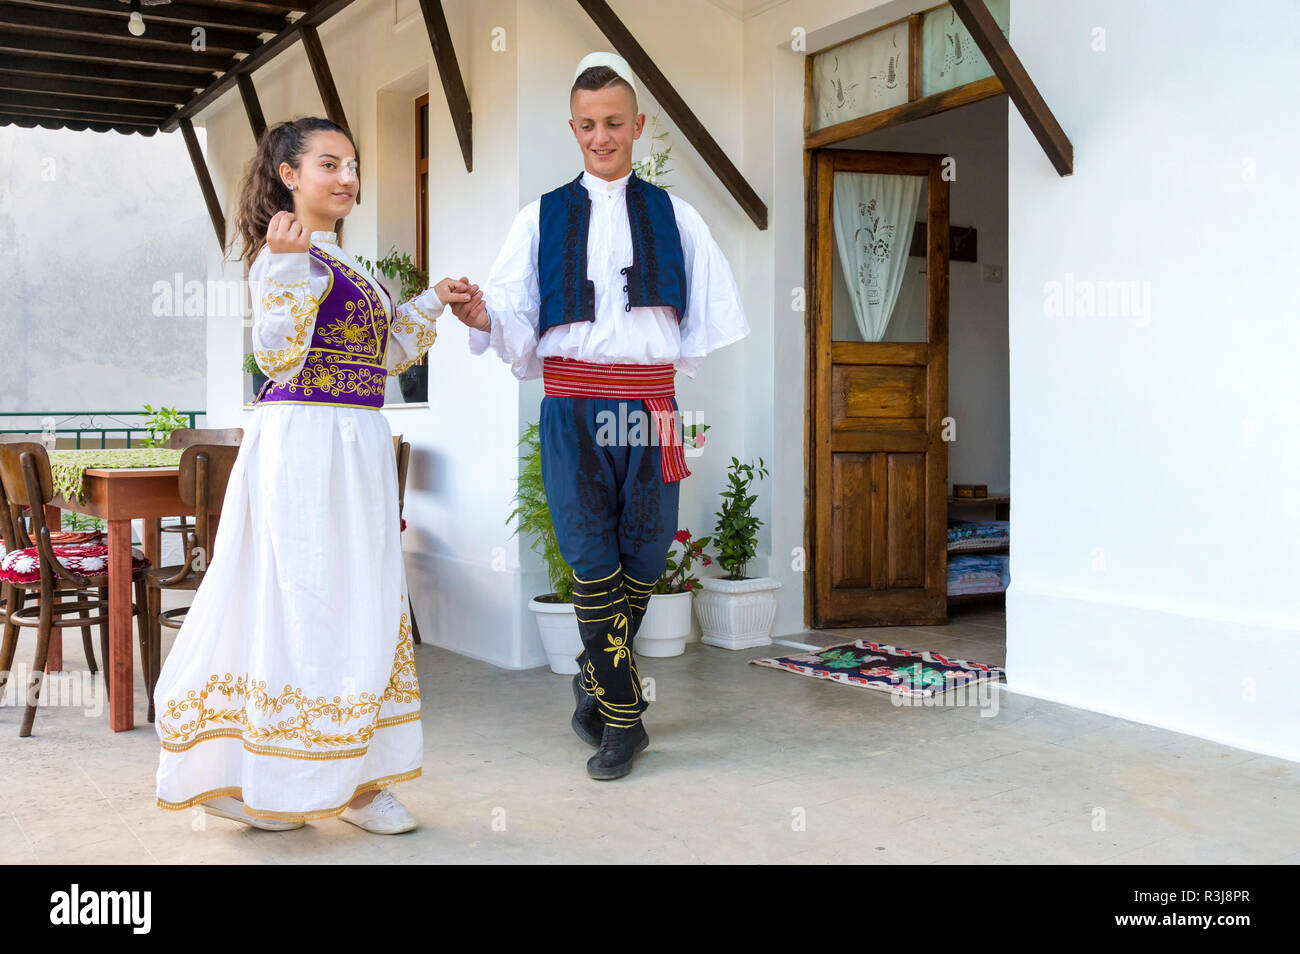 Locale gruppo folkloristico in costume tradizionale dimostrando nazionale di danza albanese, Berat, Albania Foto Stock